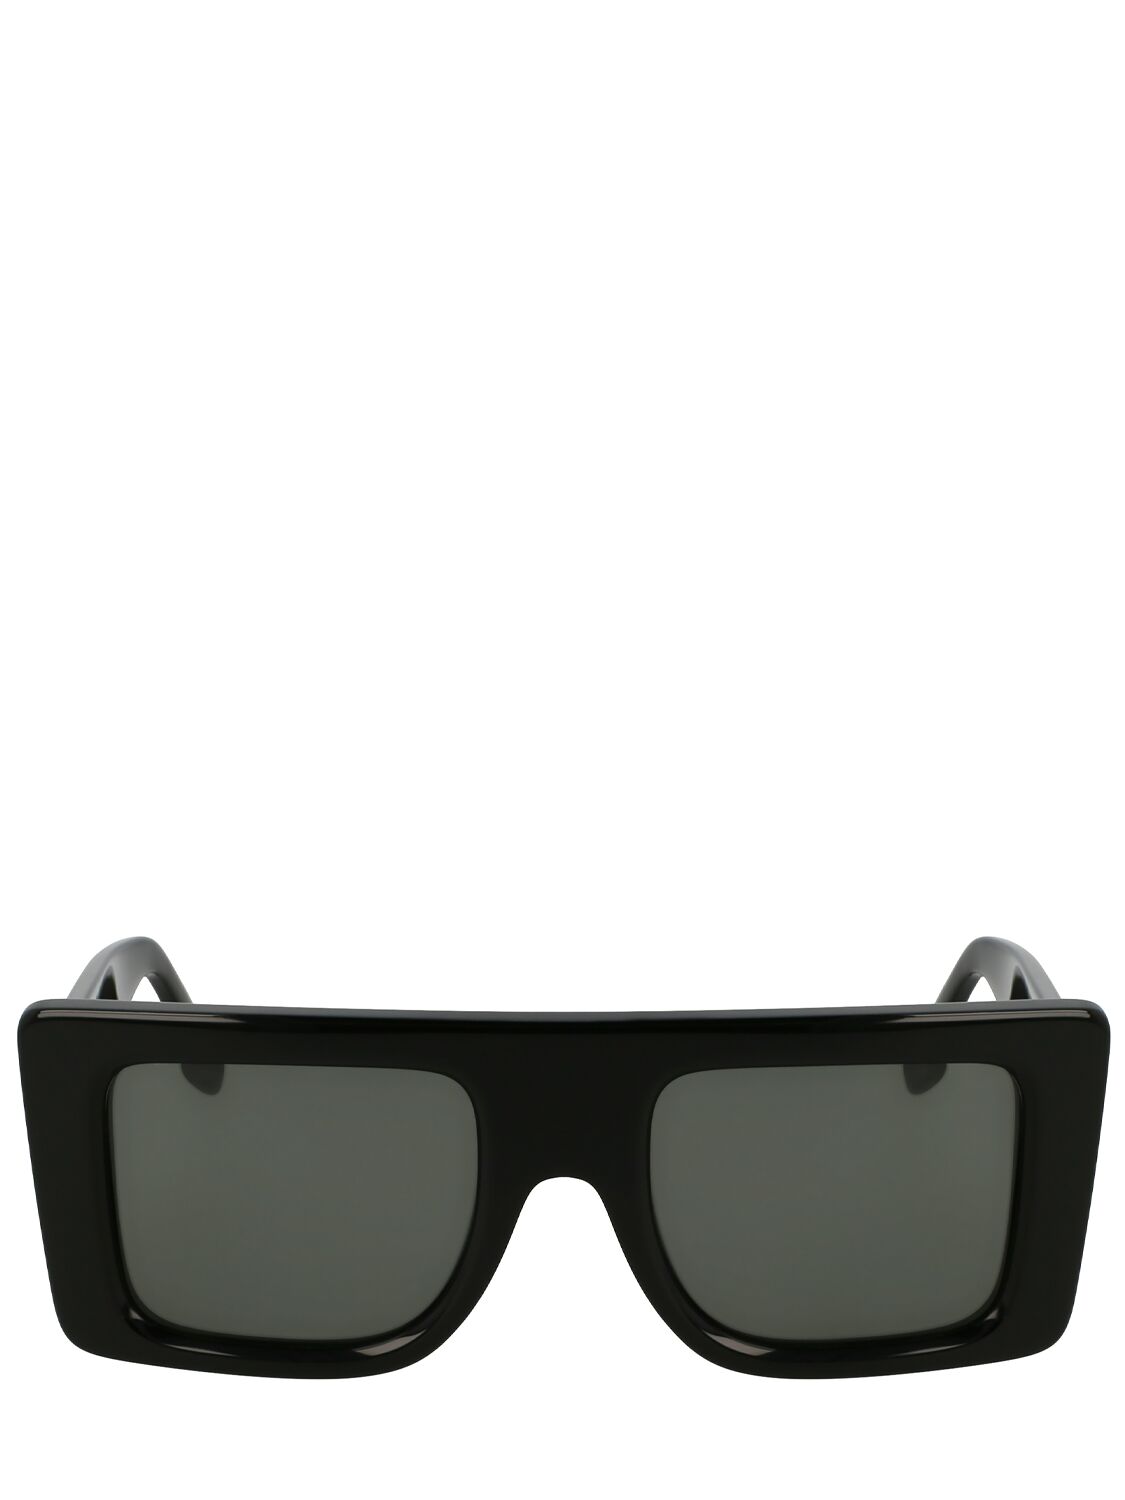 Victoria Beckham B Buckle Acetate Sunglasses In Black